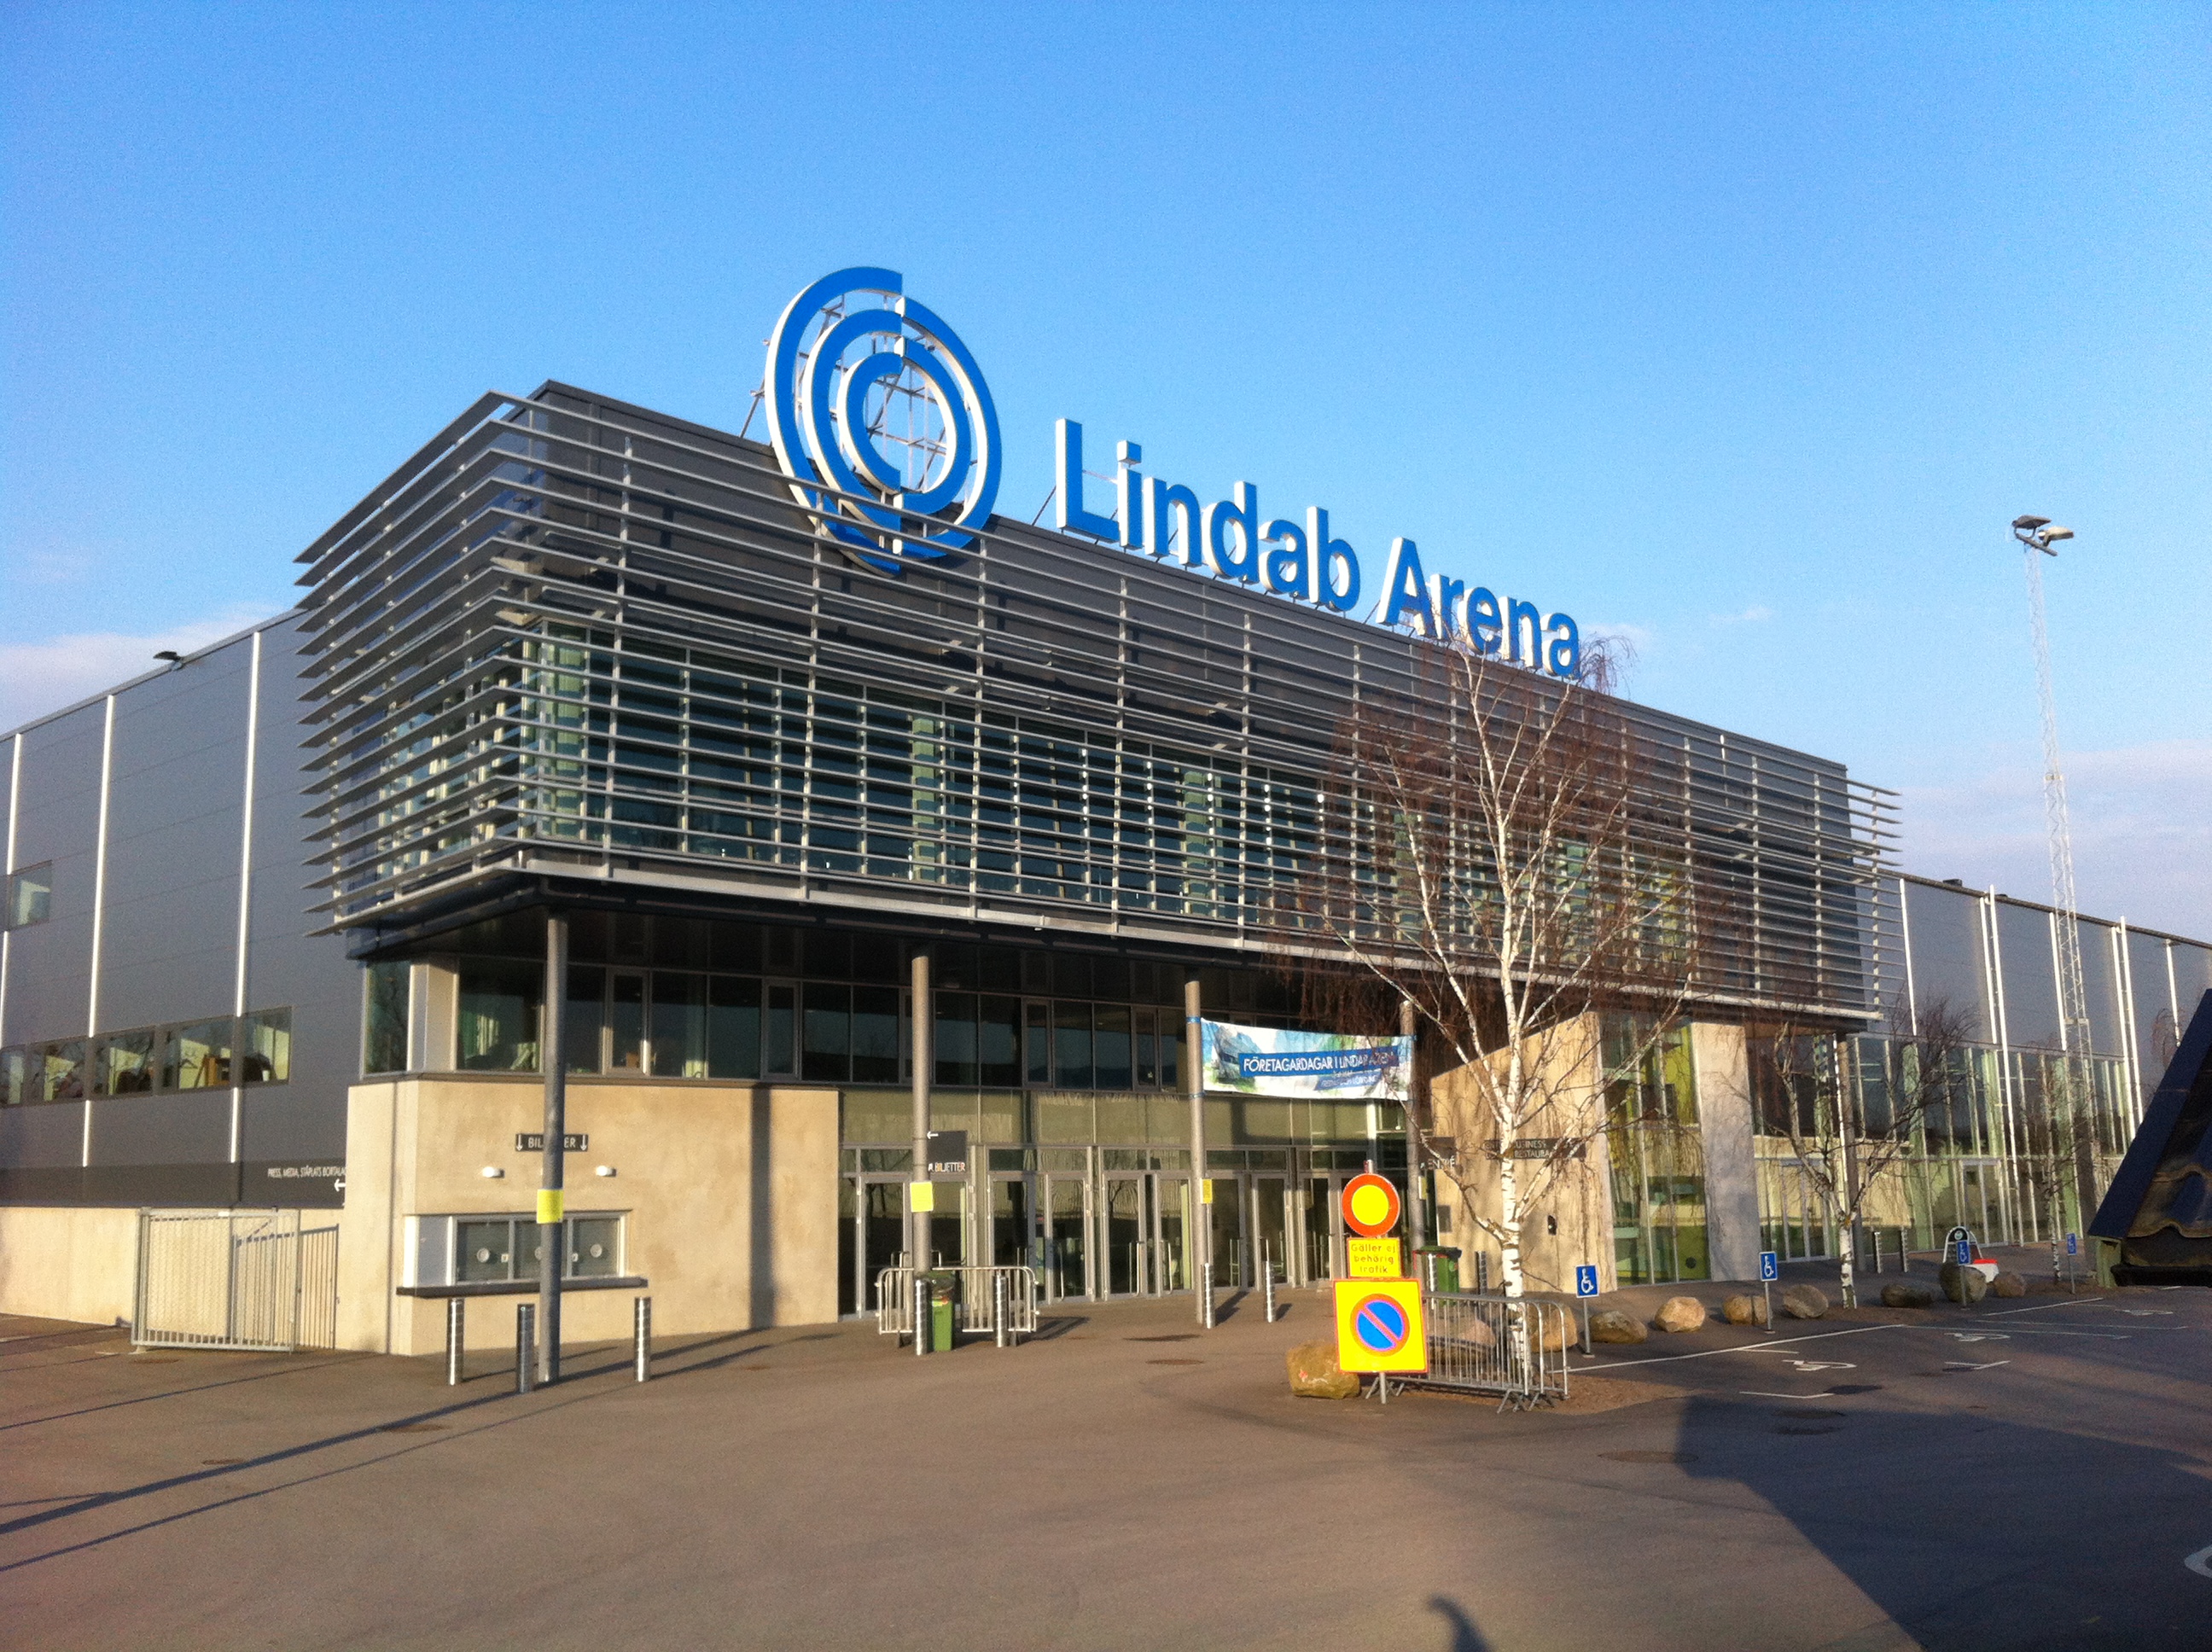 Lindab Arena